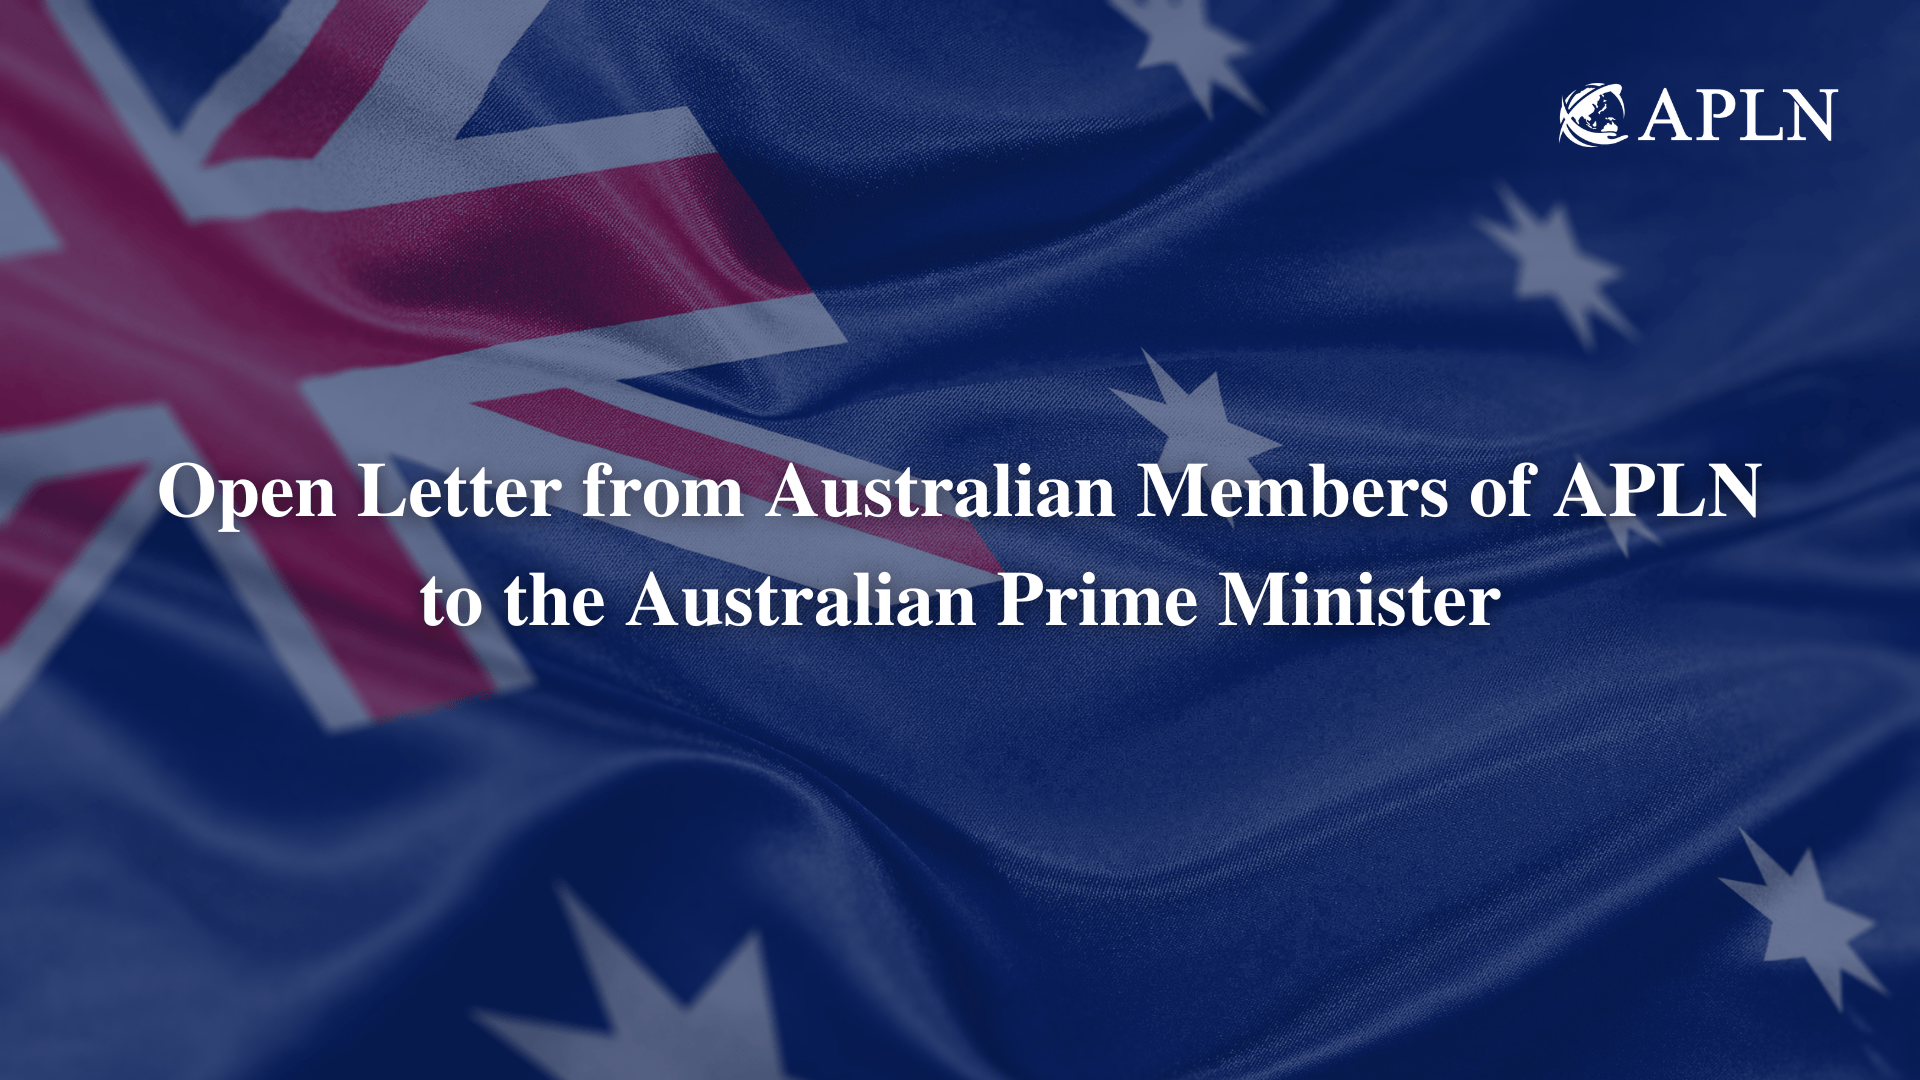 Open Letter from Australian Members of APLN to the Australian Prime Minister